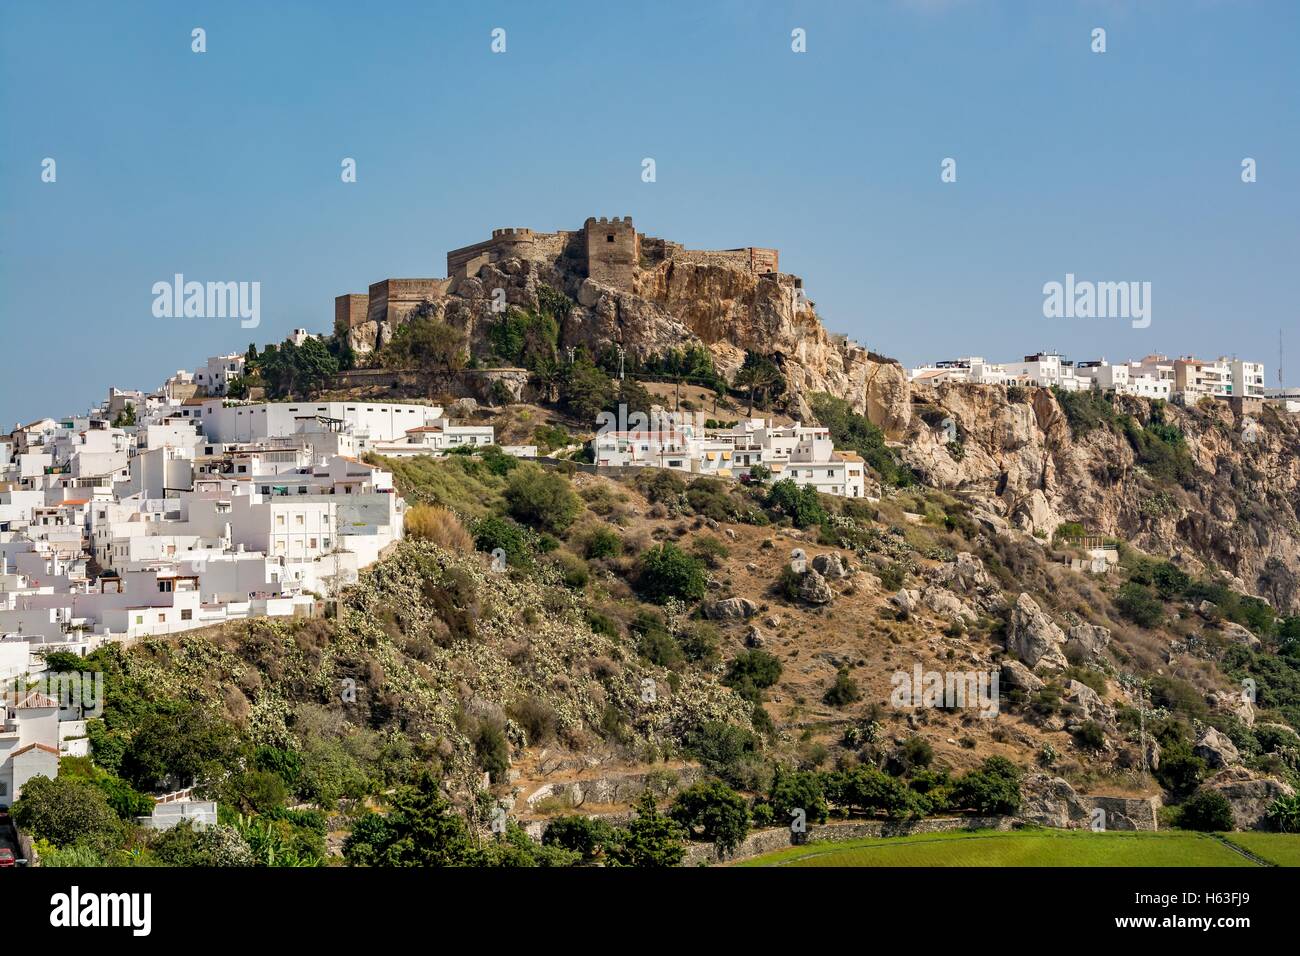 Castillo de salobrena hi-res stock photography and images - Alamy